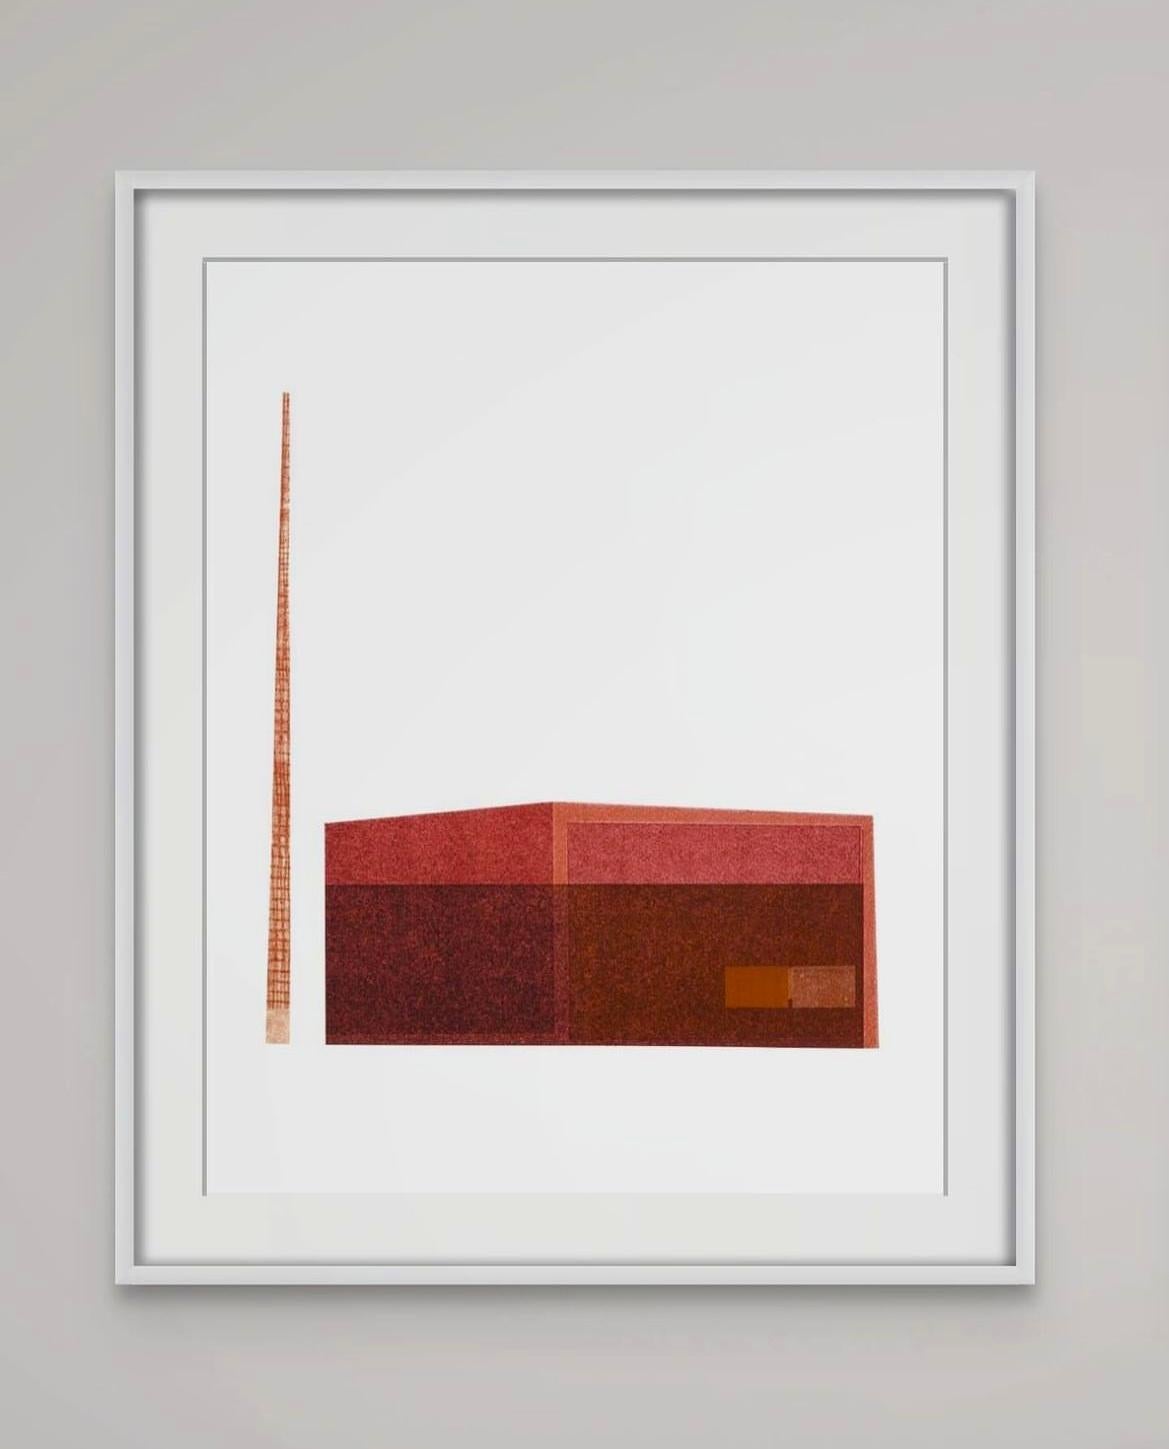 Power Station : collage d'architecture urbaine moderniste sur monoimpression en rouge, encadré - Print de Agathe Bouton